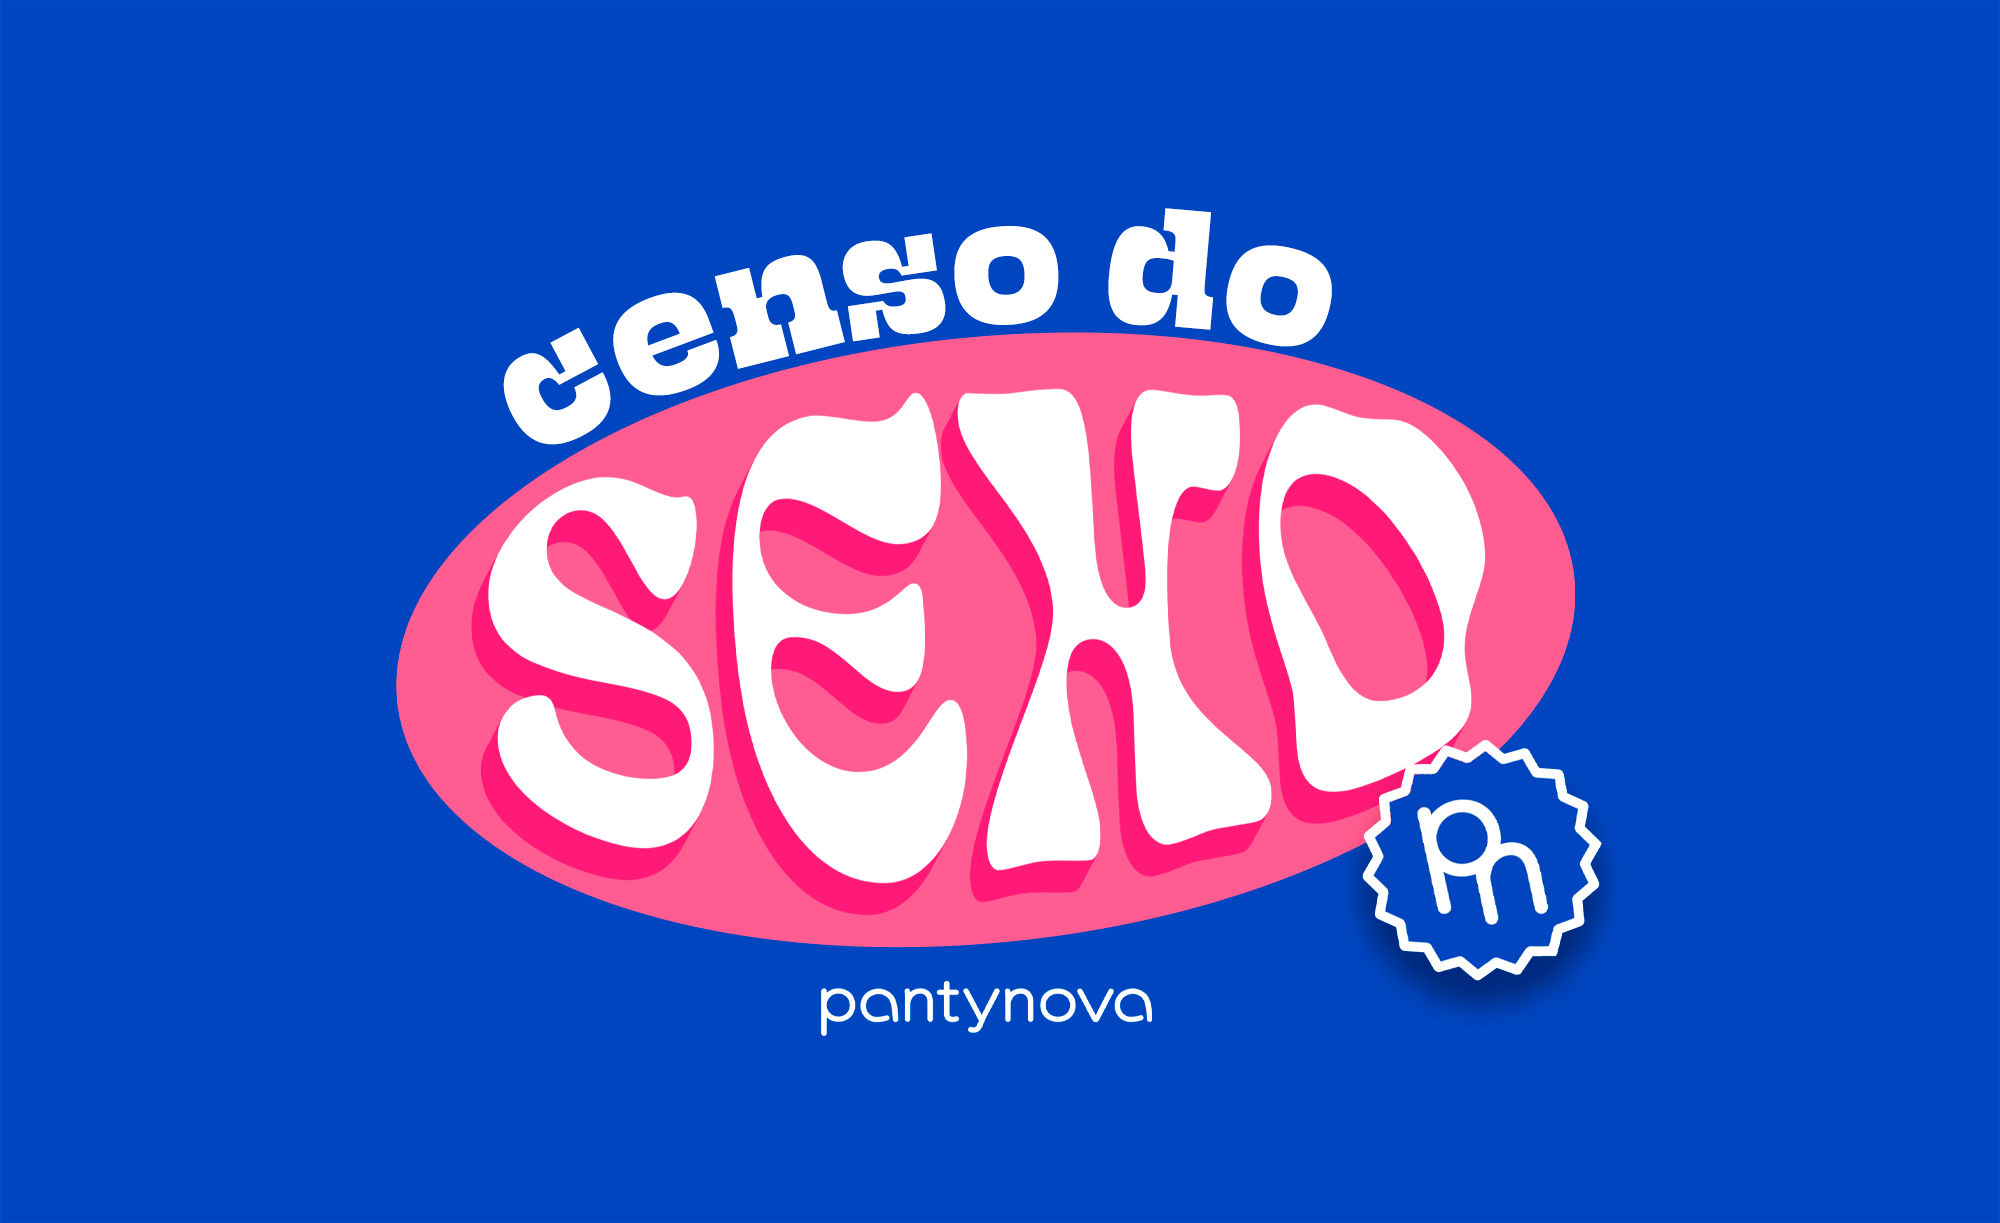 Censo do Sexo pantynova 22 - sex shop pantynova